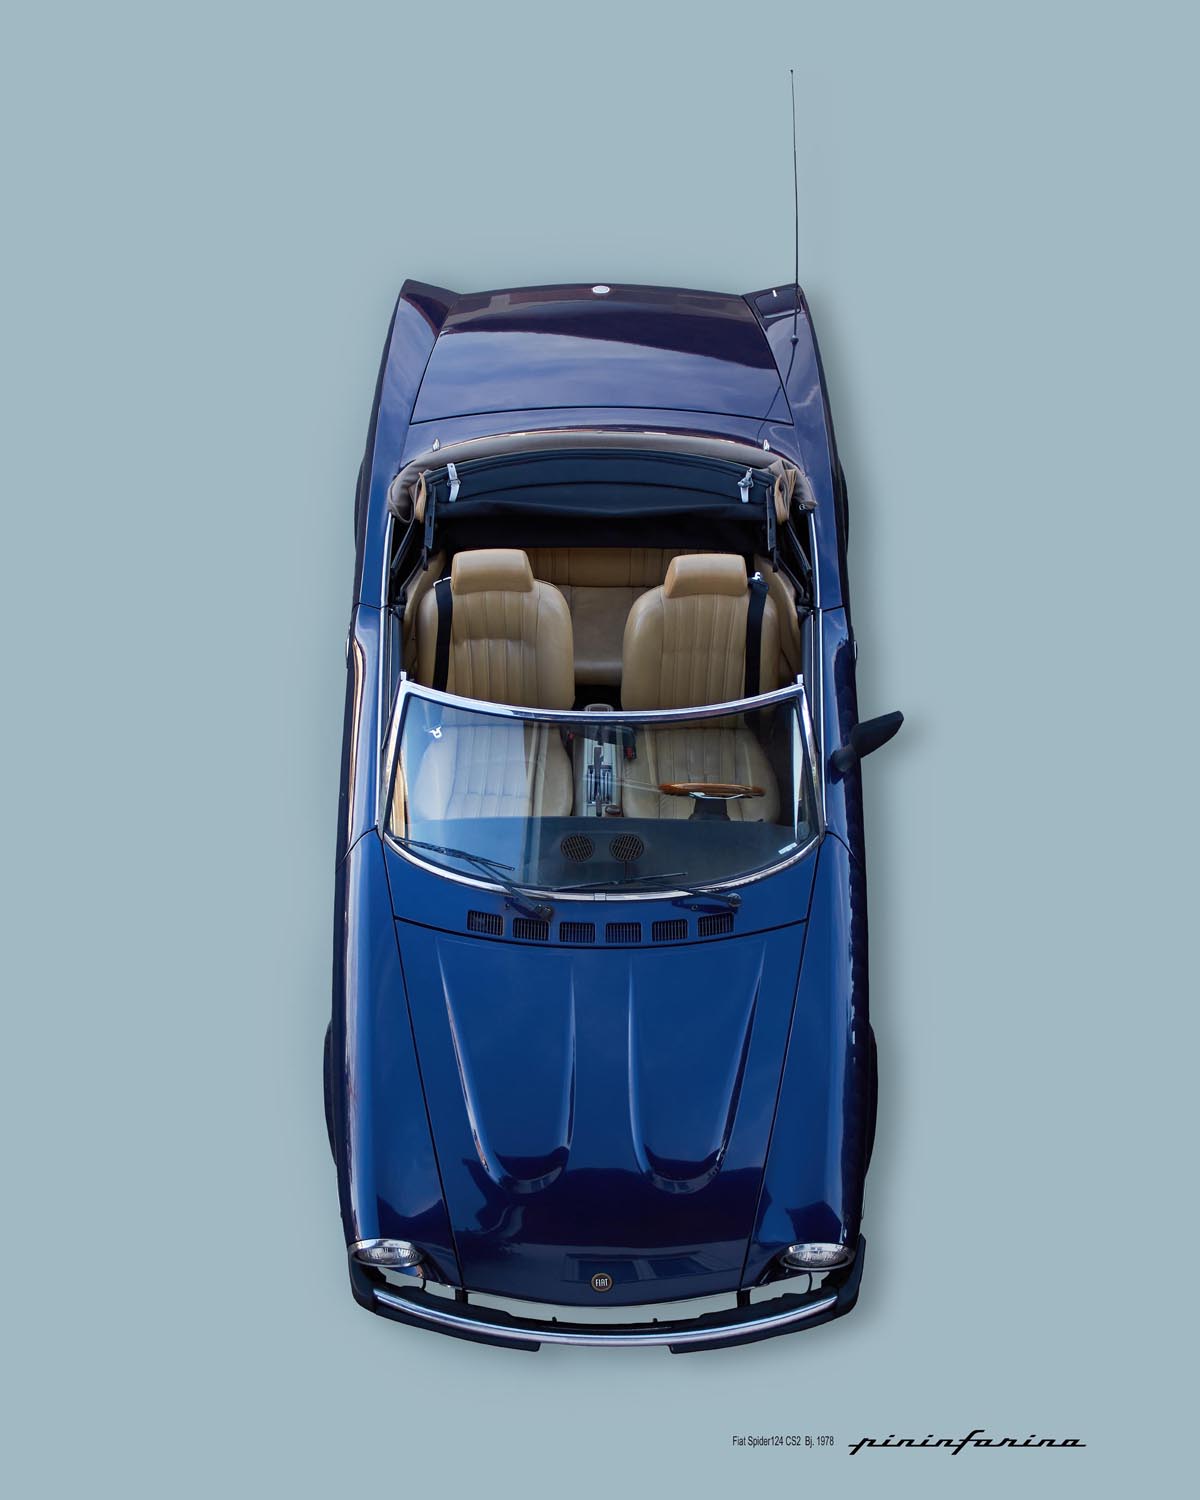 Roland Troll Fotografie Fiat 124 Spider Pininfarina Plakat Cabrio von oben offen